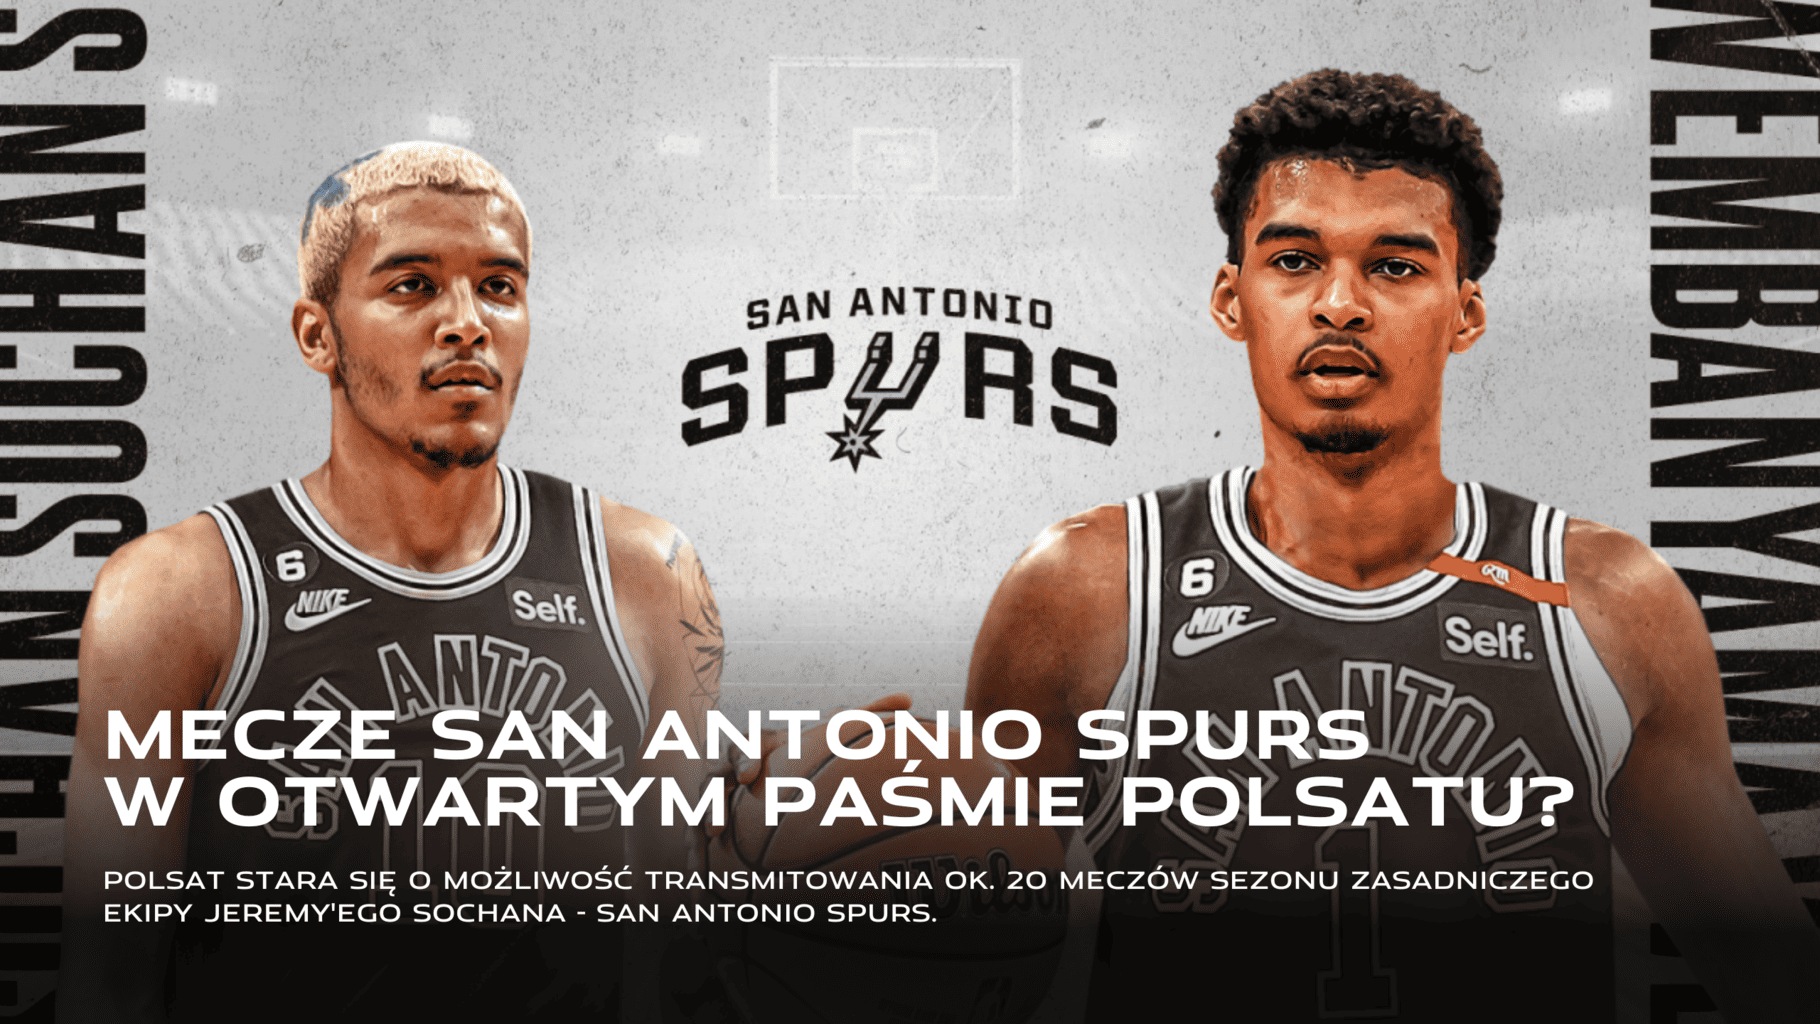 Polsat stara się o transmitowanie meczów San Antonio Spurs w NBA